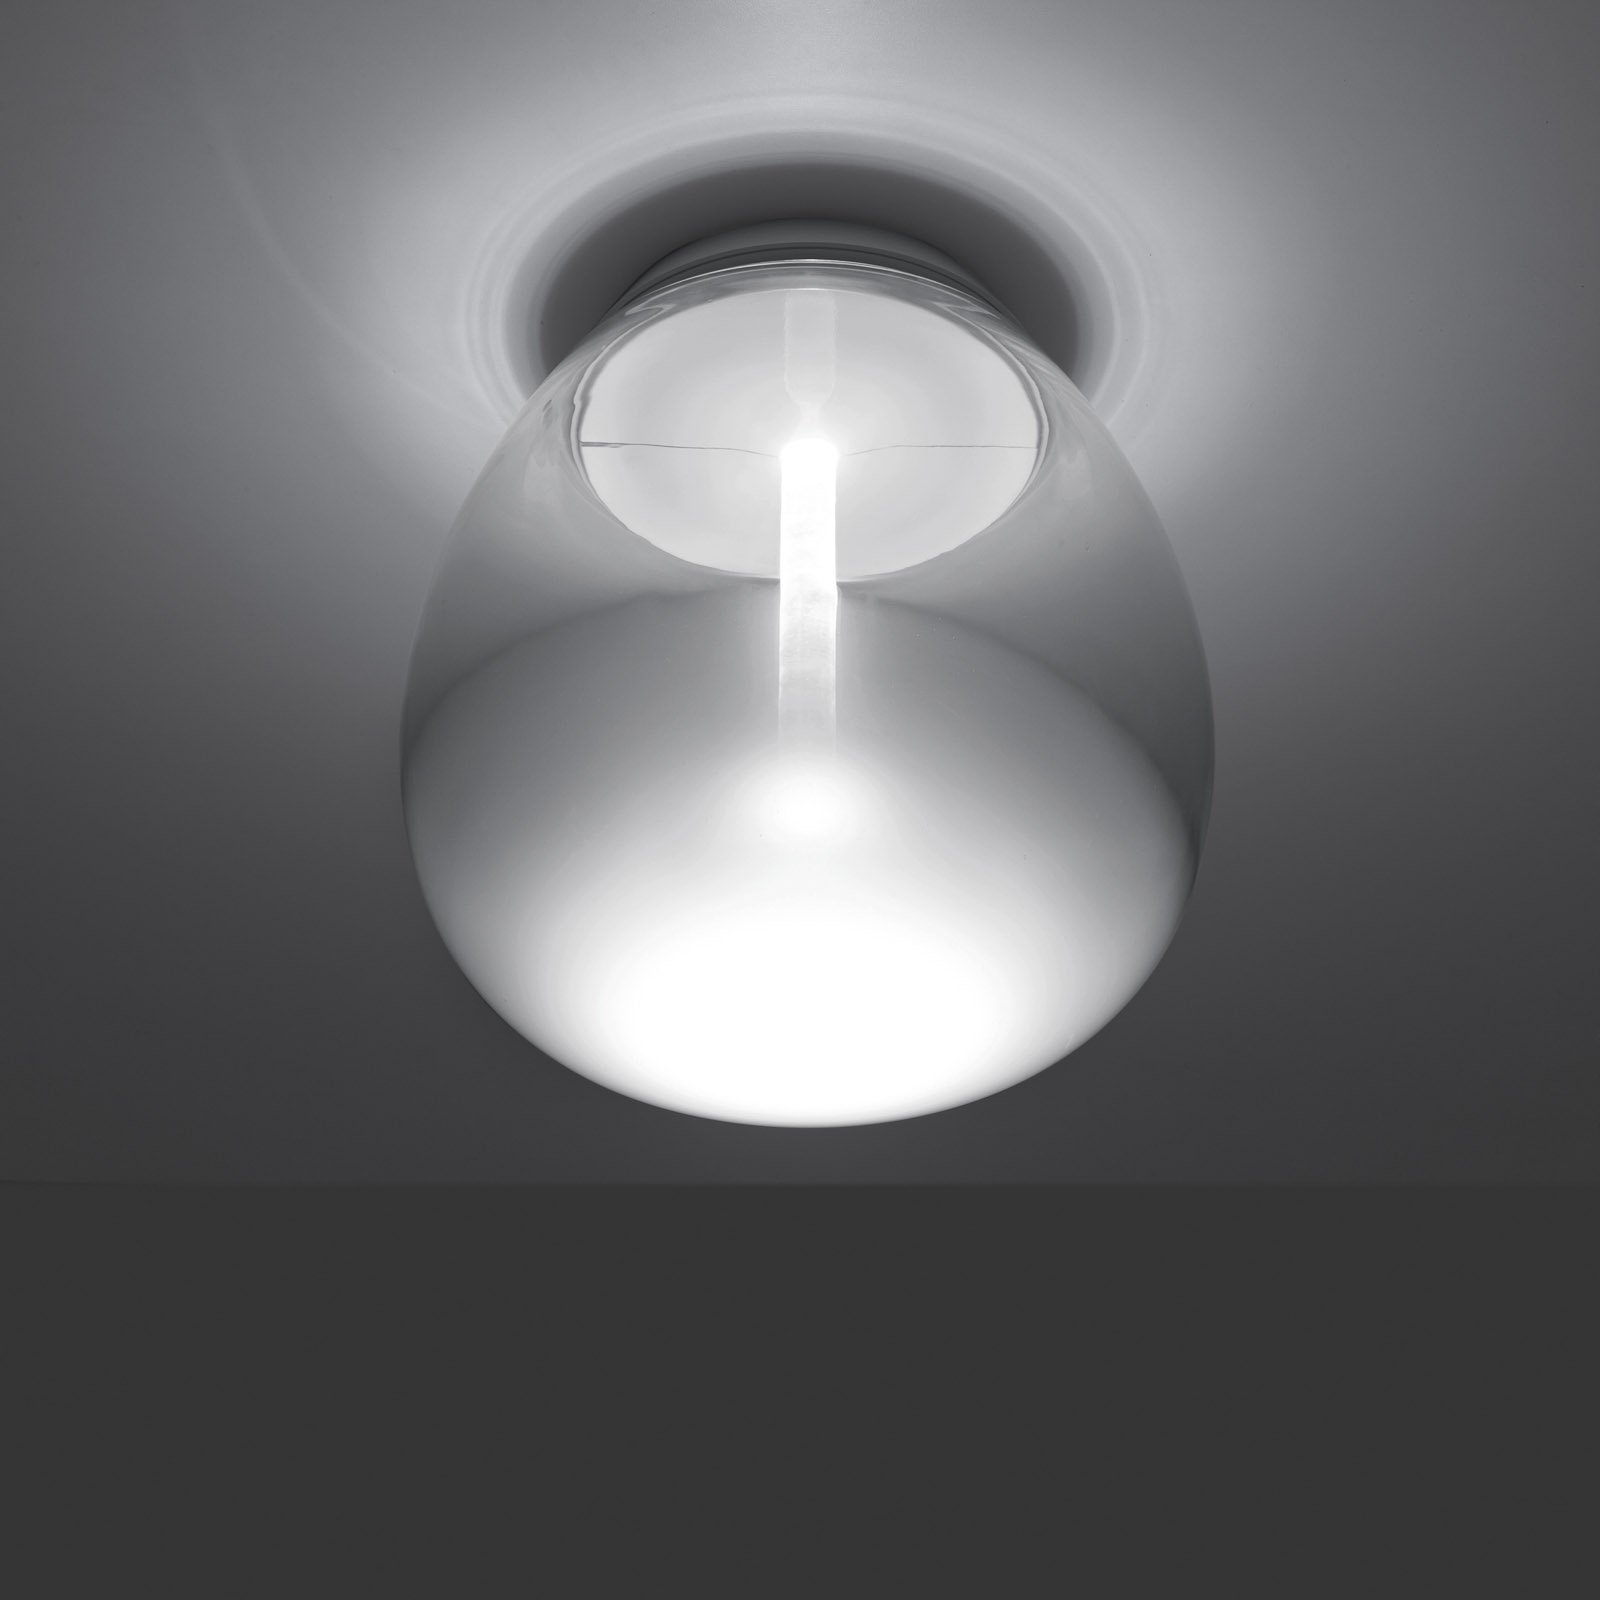 Artemide Empatia LED stropné svietidlo, Ø 36 cm